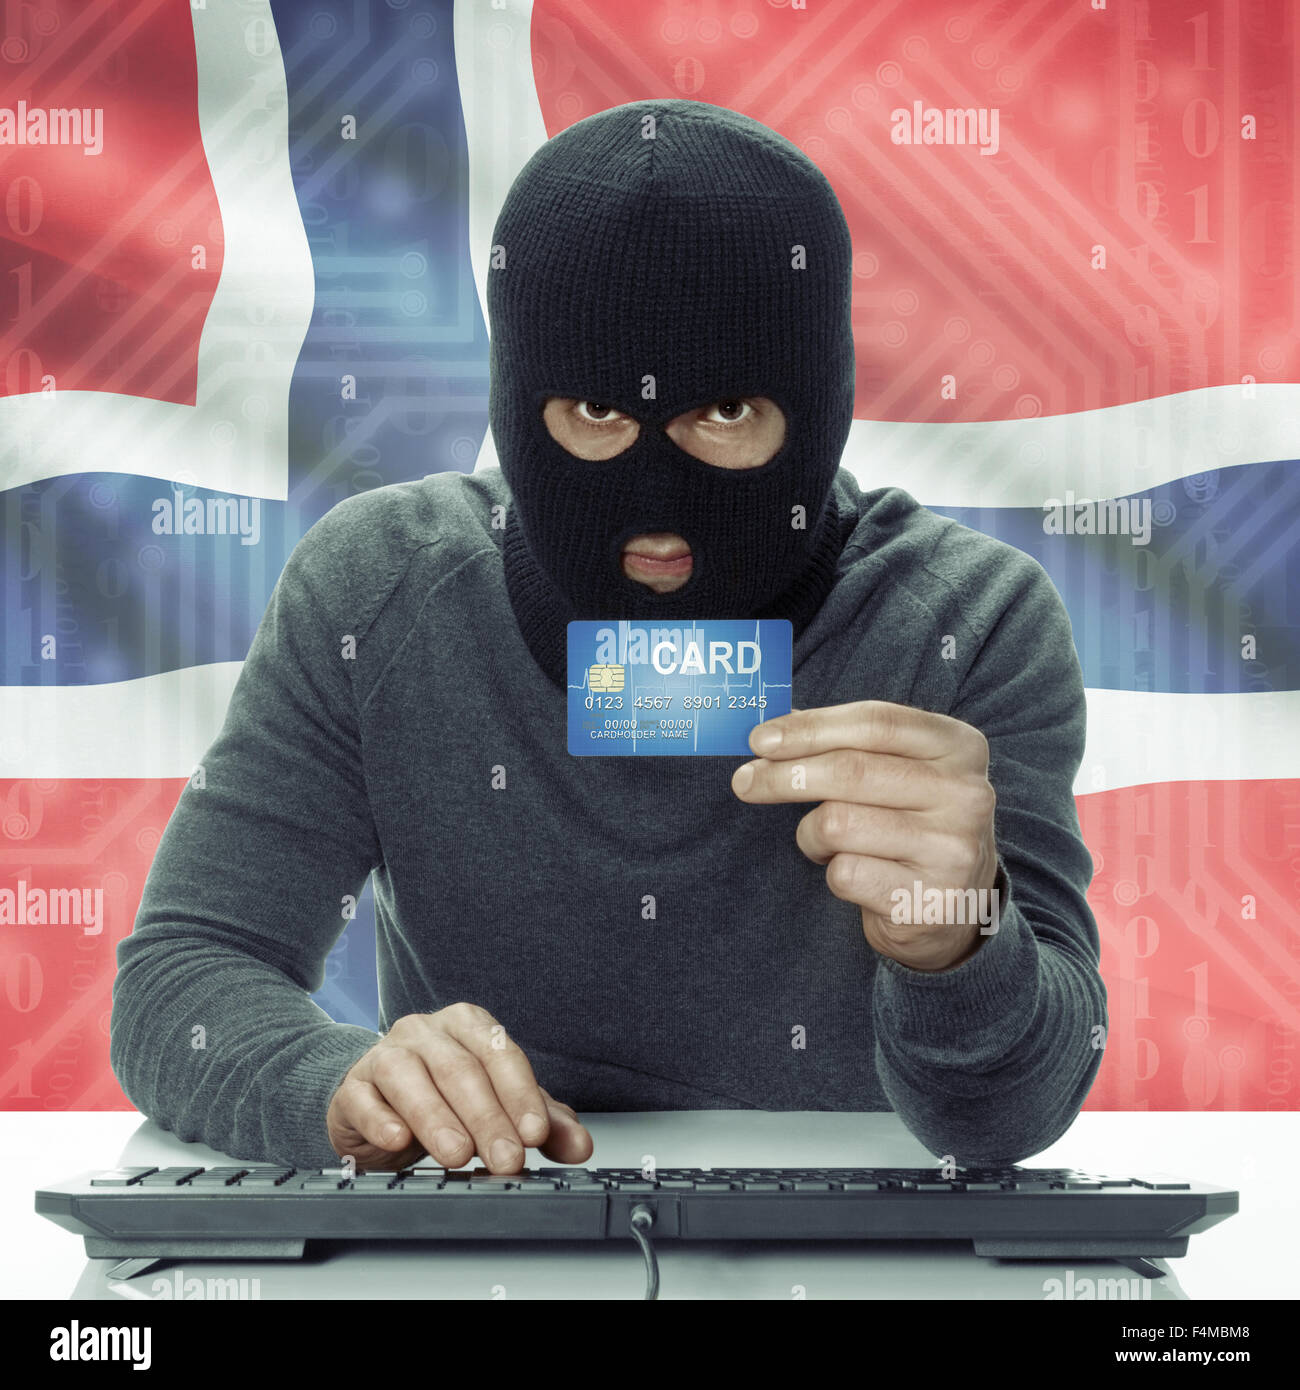 La peau sombre pirate avec carte de crédit en main et d'un drapeau sur fond - Norvège Banque D'Images